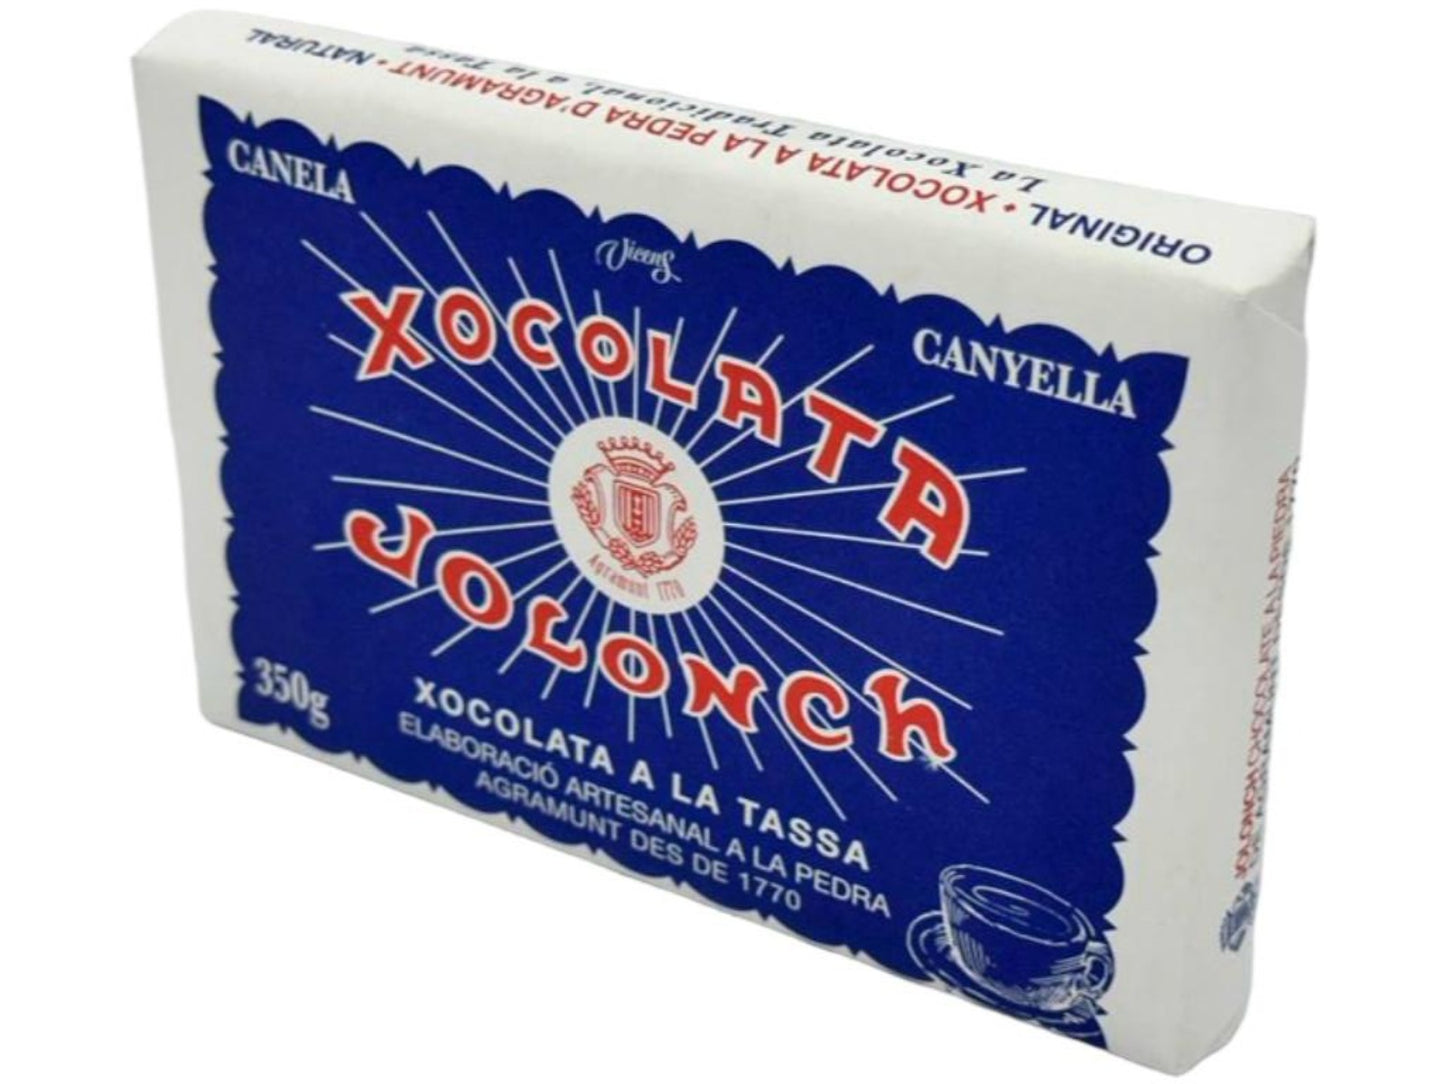 Vicens Xocolata Jolonch Xoxolata A La Pedra A La Tazza Spanish Stone Ground Hot Chocolate 350g